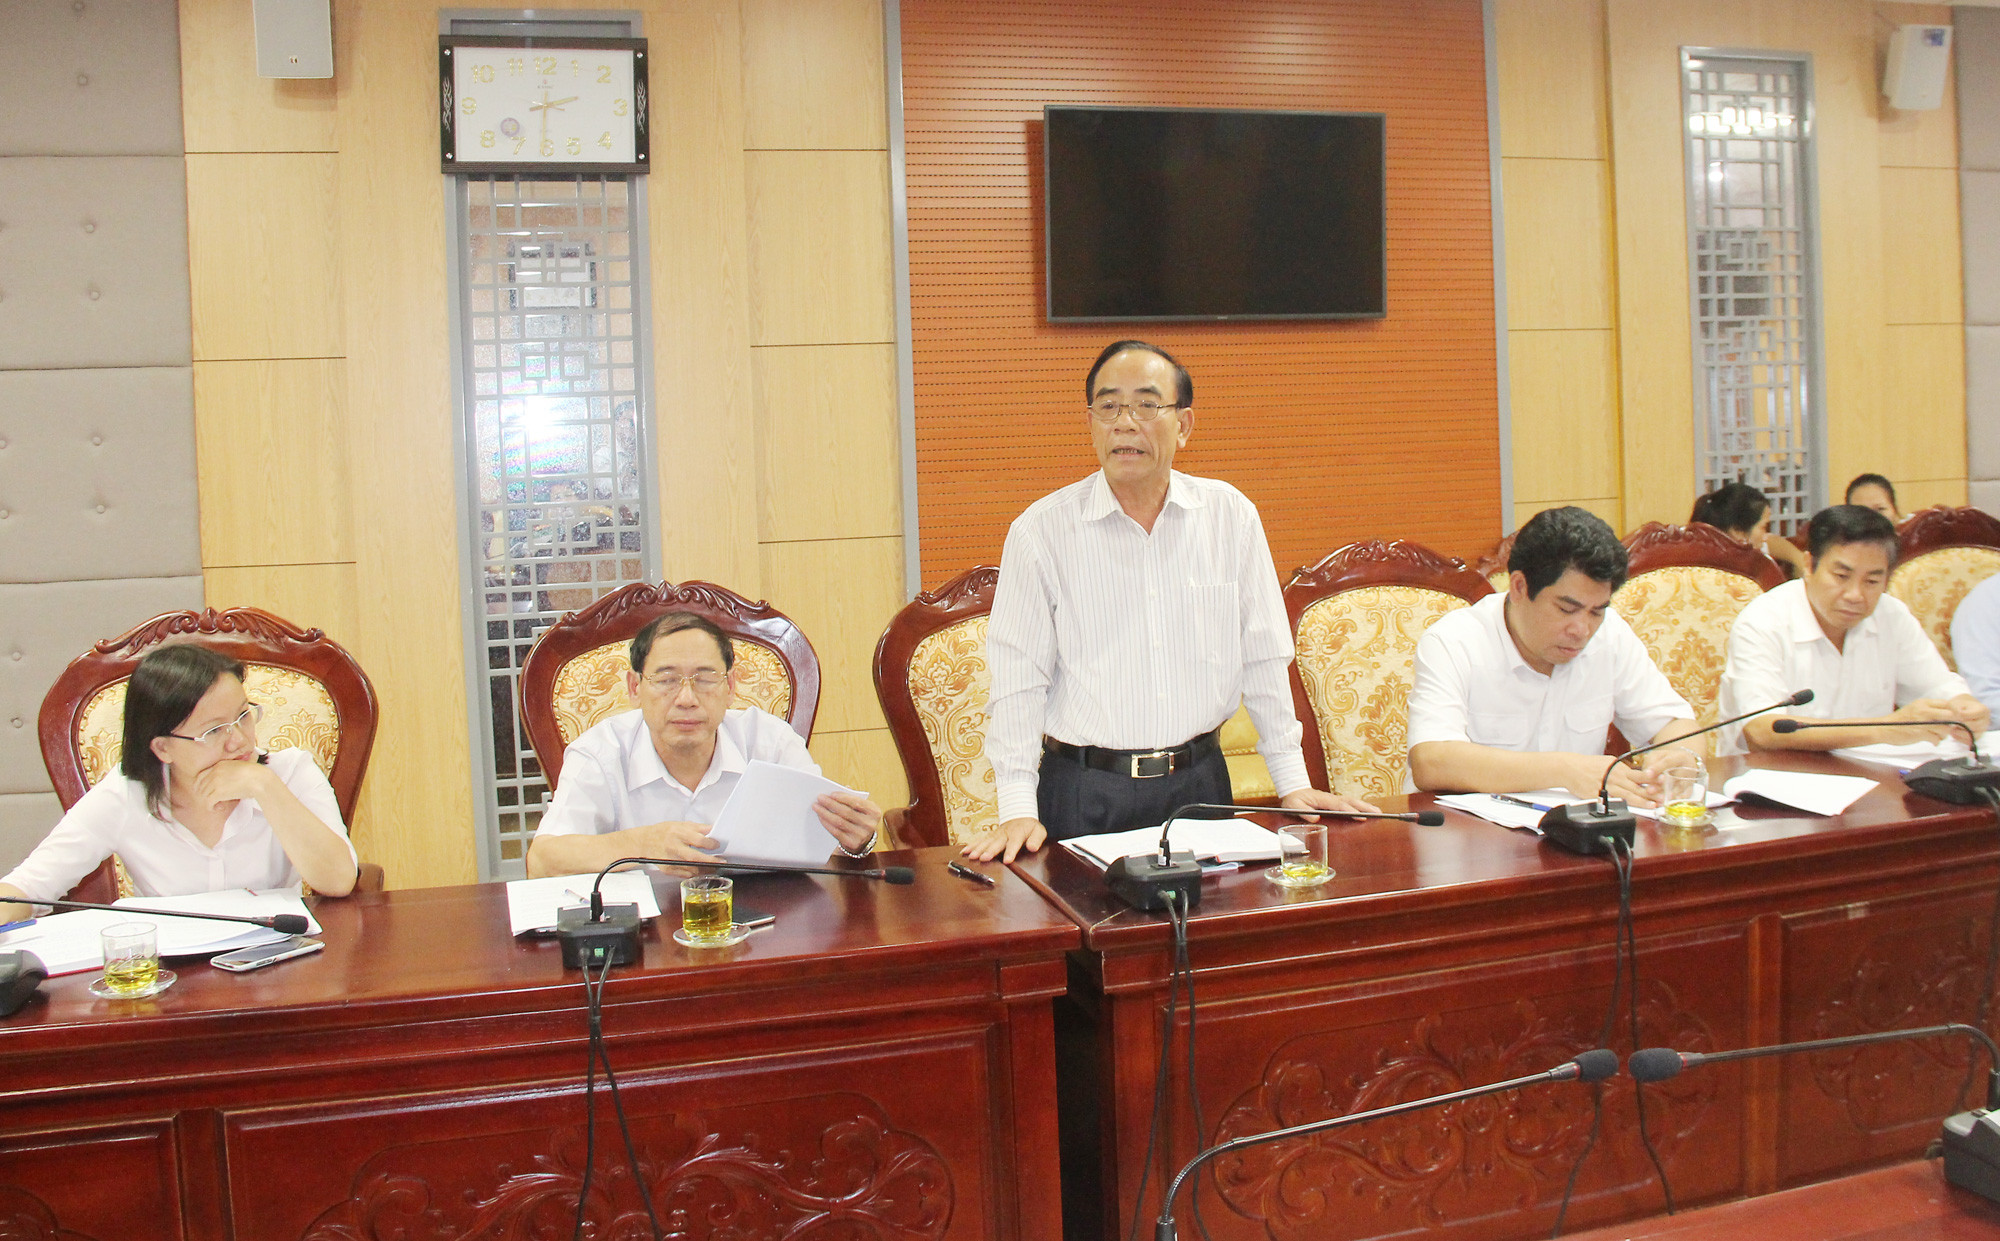 Ông Trần Văn Hường, thành viên Ban Pháp chế HĐND tỉnh kiến nghị cần bổ sung điều kiện cấp giấy phép kinh doanh đối với các ngành nghề có điều kiện về ANTT là phải có đủ điều kiện về ANTT mới được cấp phép. Ảnh: Minh Chi